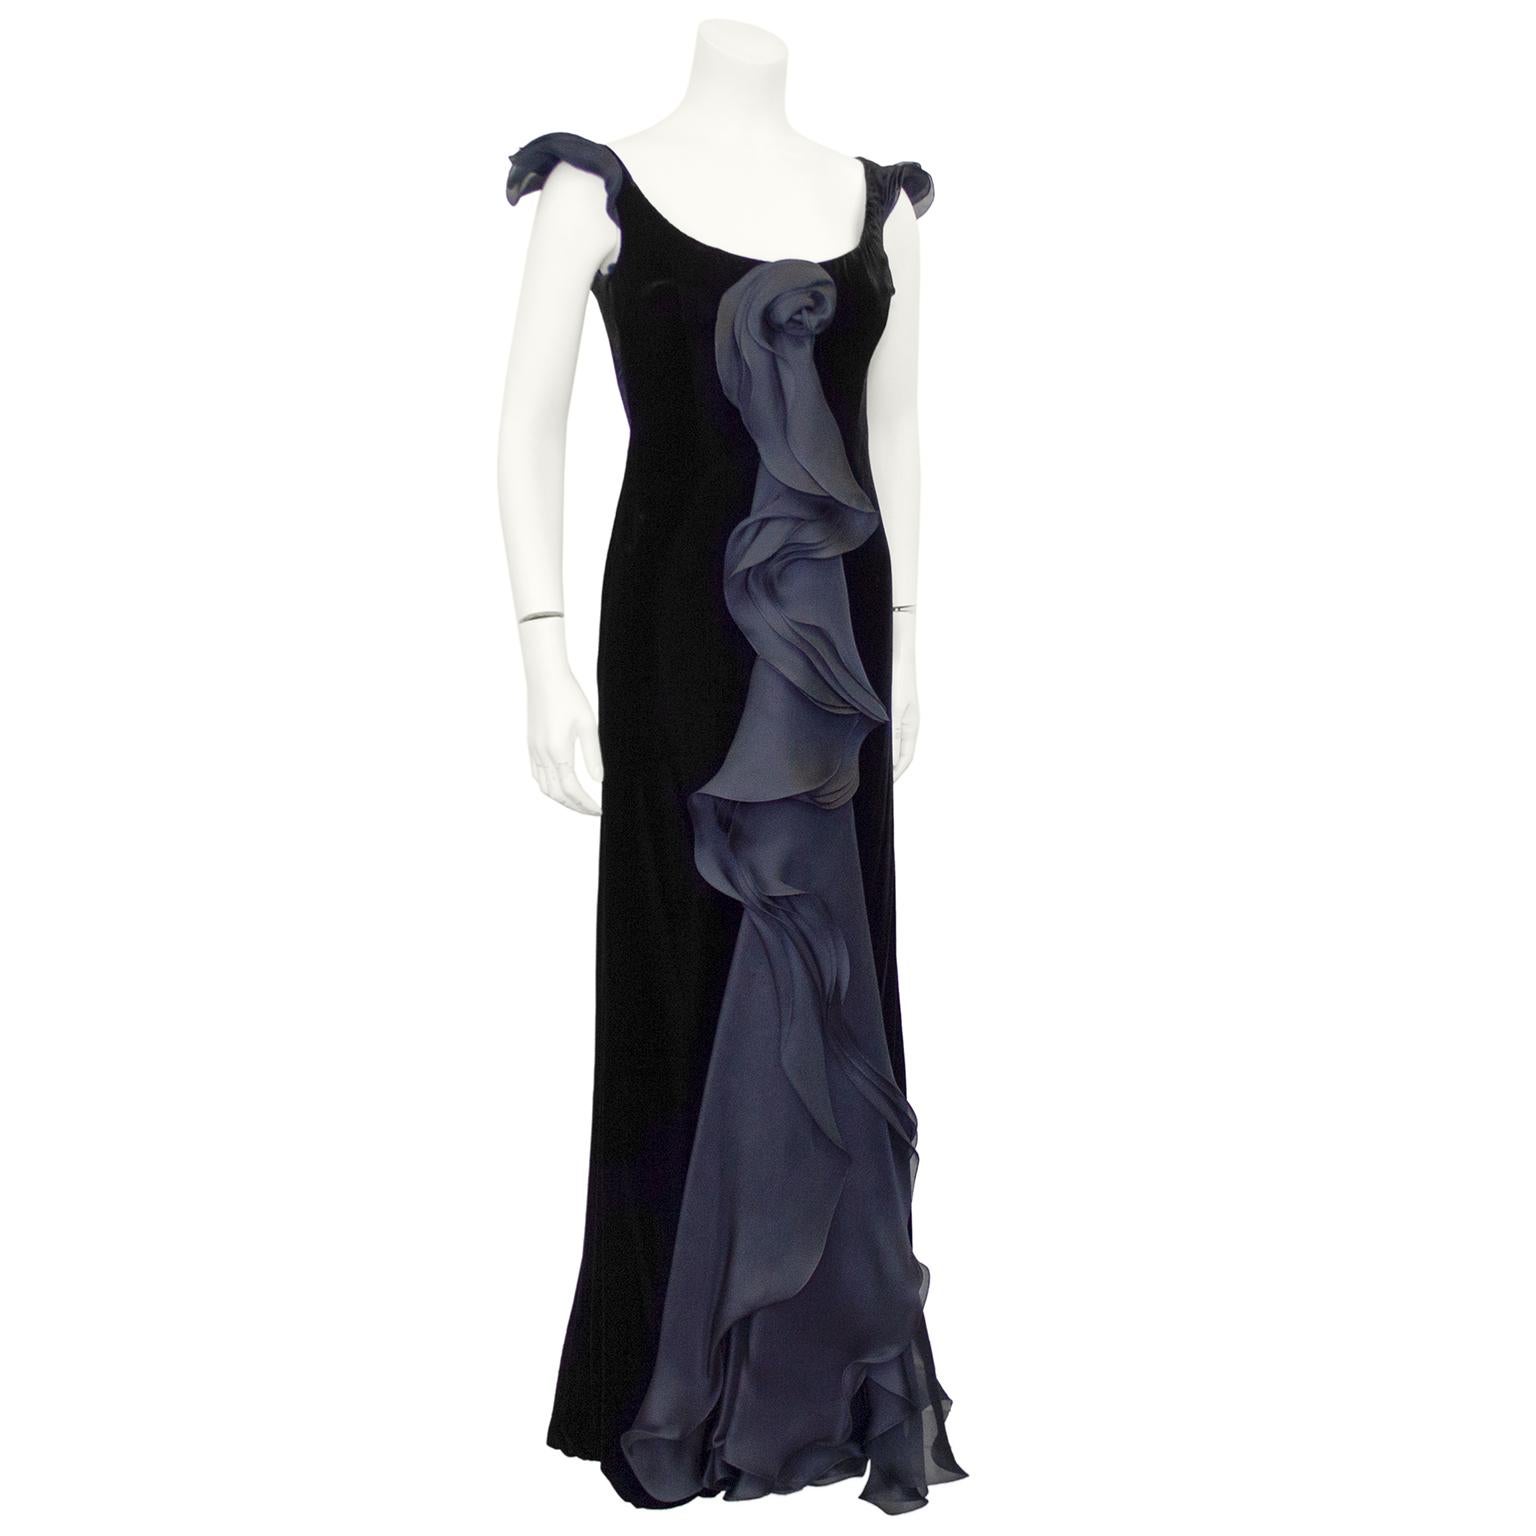 Cette robe de velours noir de Giorgio Armani datant des années 1990 est magnifique et éthérée. Sans manches, avec un large décolleté et une forme fourreau. Ce qui attire l'attention dans cette robe, c'est l'étonnante mousseline de soie noire